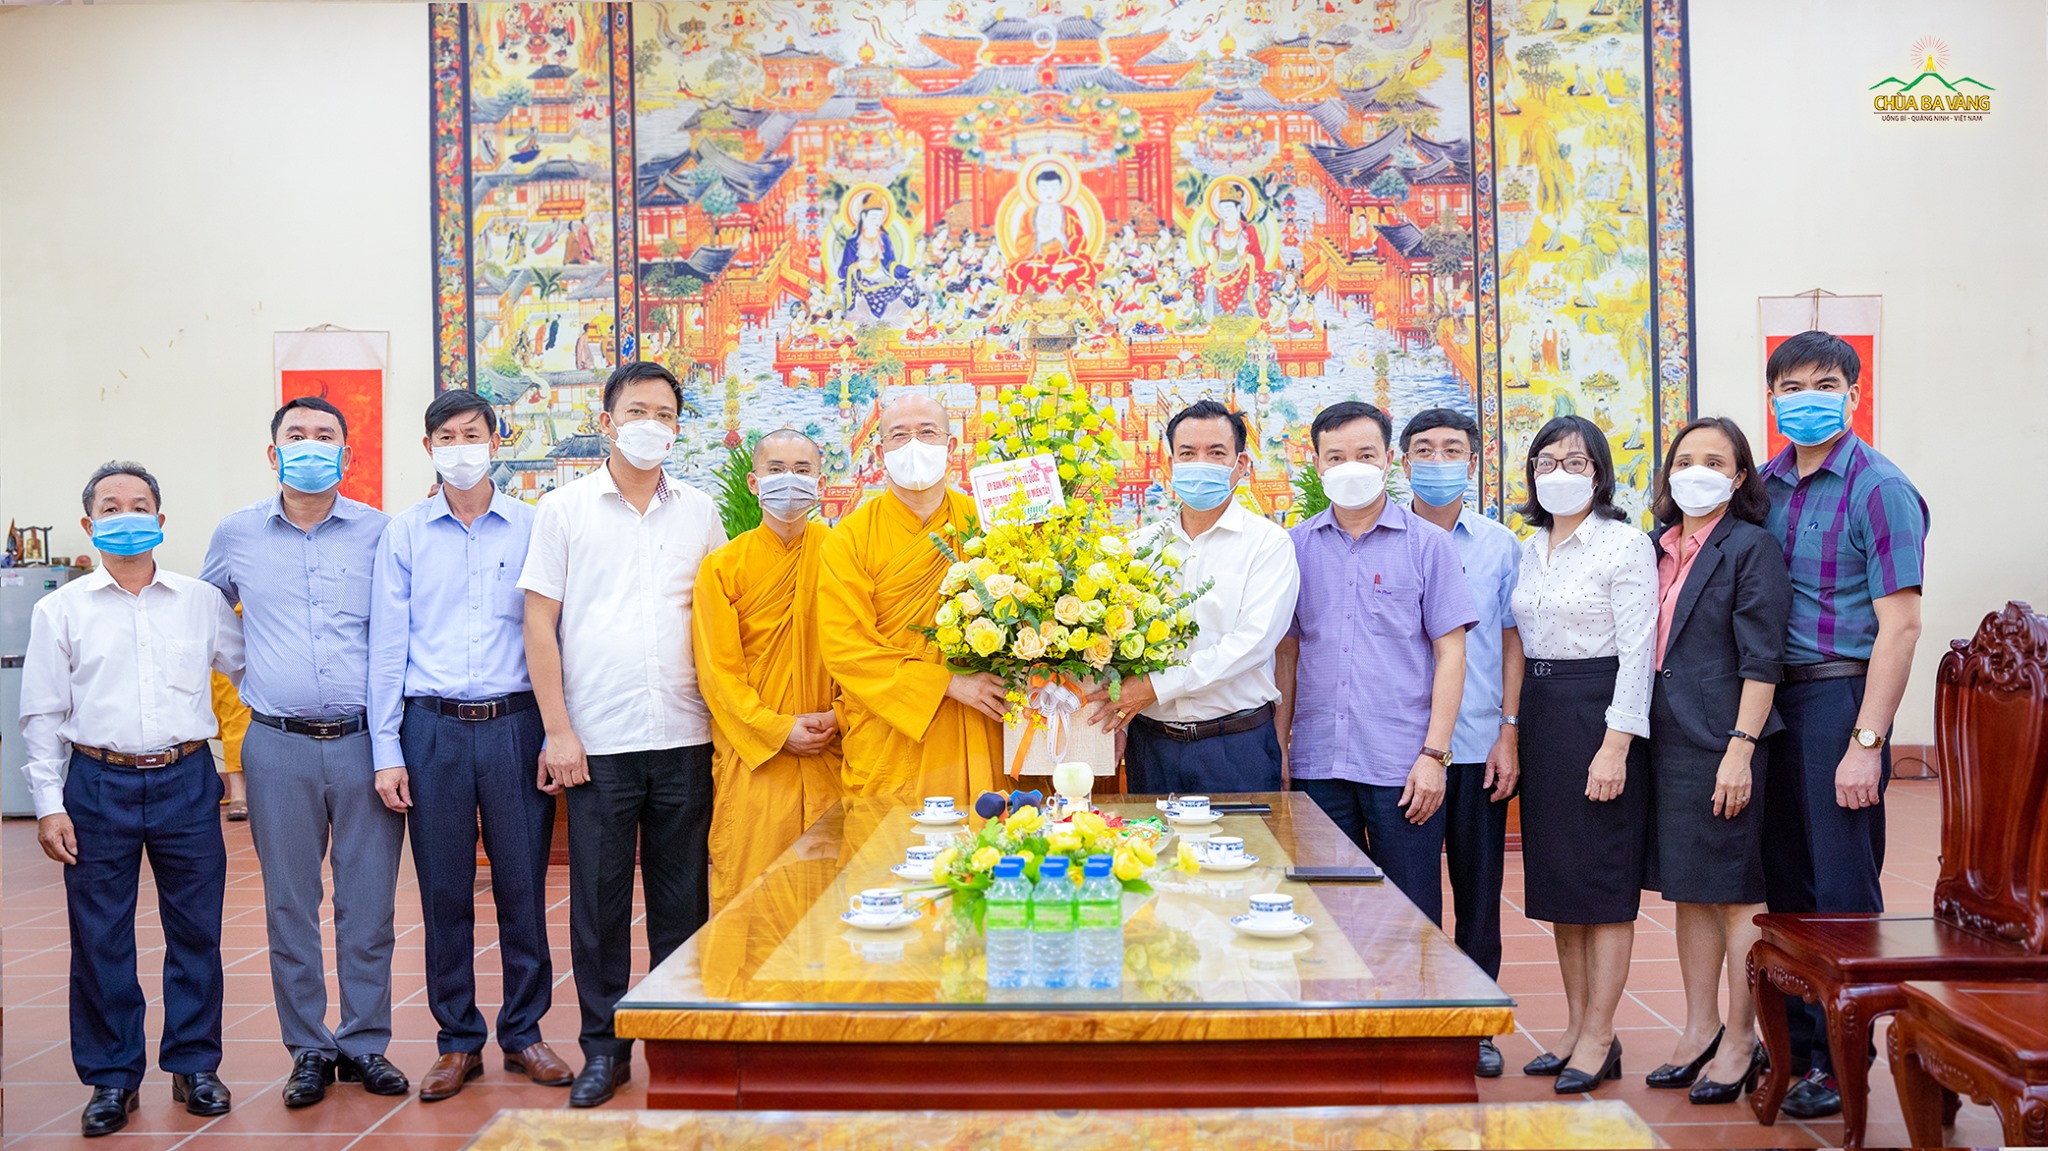 Nhân kỷ niệm 40 năm ngày thành lập GHPGVN (7/11/1981 - 7/11/2021), hôm nay - ngày 6/11/2021, đoàn lãnh đạo UBMTTQ tỉnh Quảng Ninh và UBMTTQ các tỉnh miền Đông đã đến thăm và trao tặng lẵng hoa chúc mừng chư Tăng Ni, Phật tử nhân dịp kỷ niệm đặc biệt này  